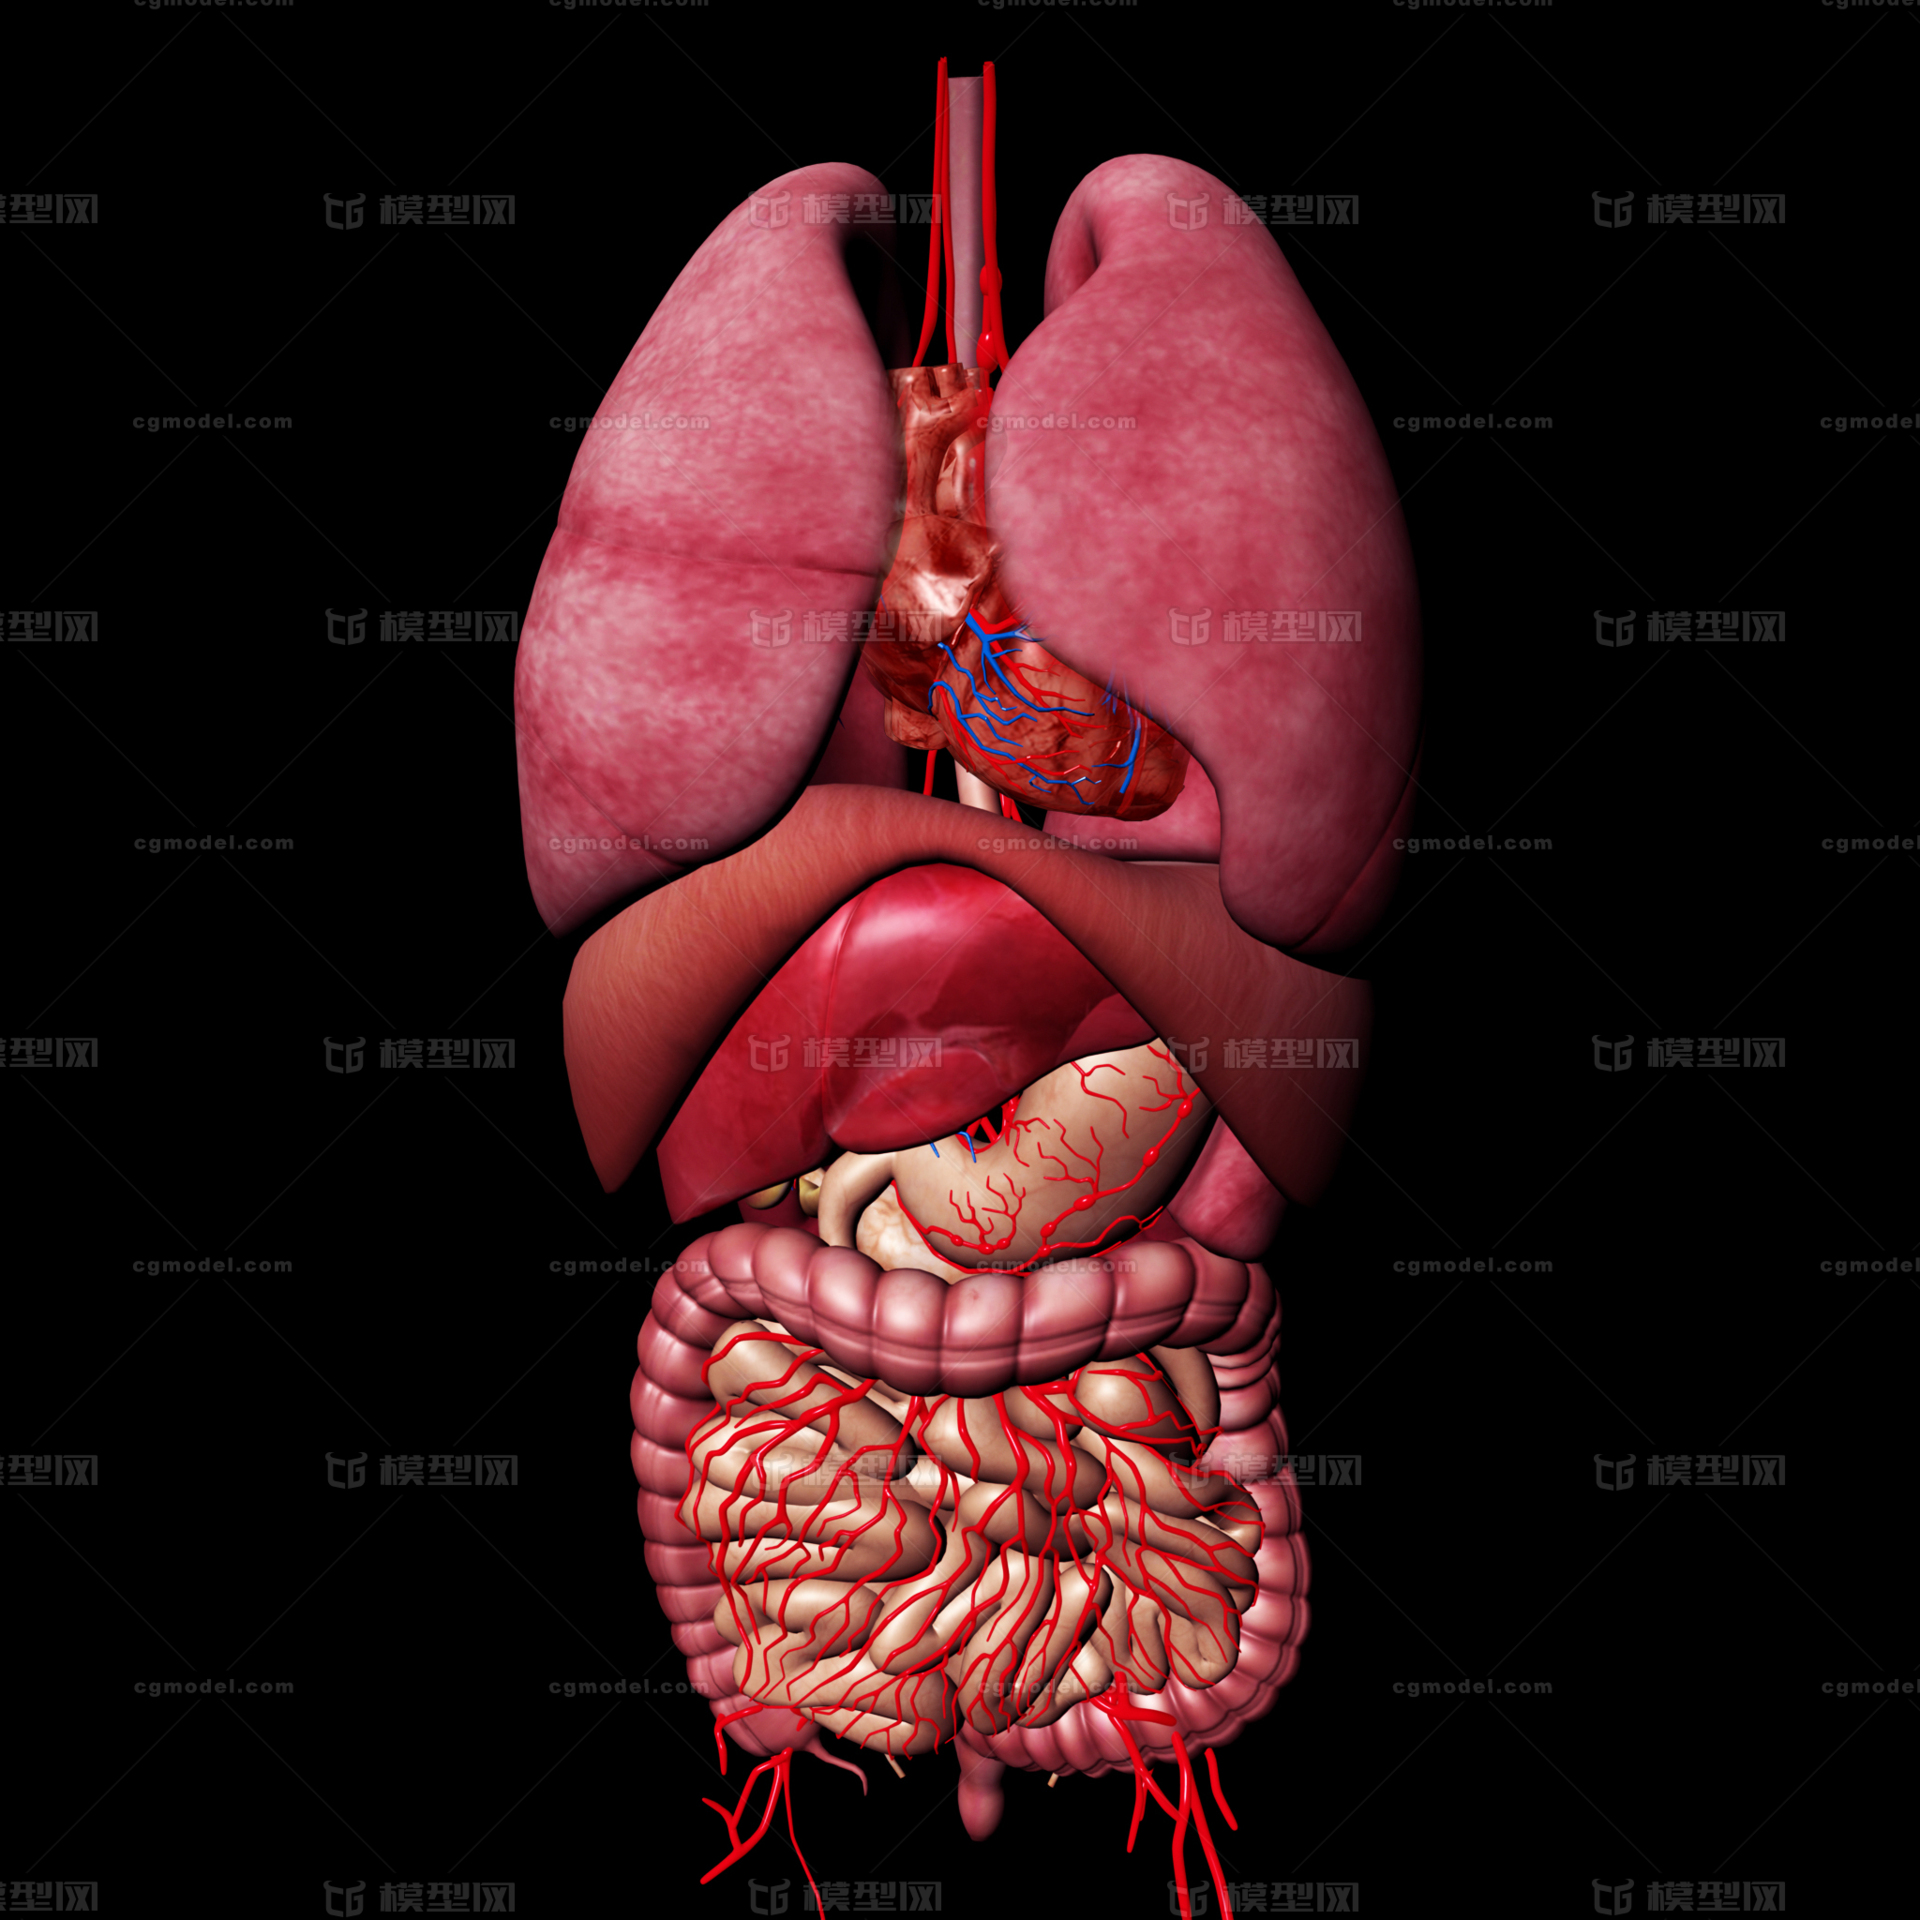 肝脏 胆囊 肺 心脏 大肠 胃 脾脏 小肠 消化系统医疗模型 人体器官